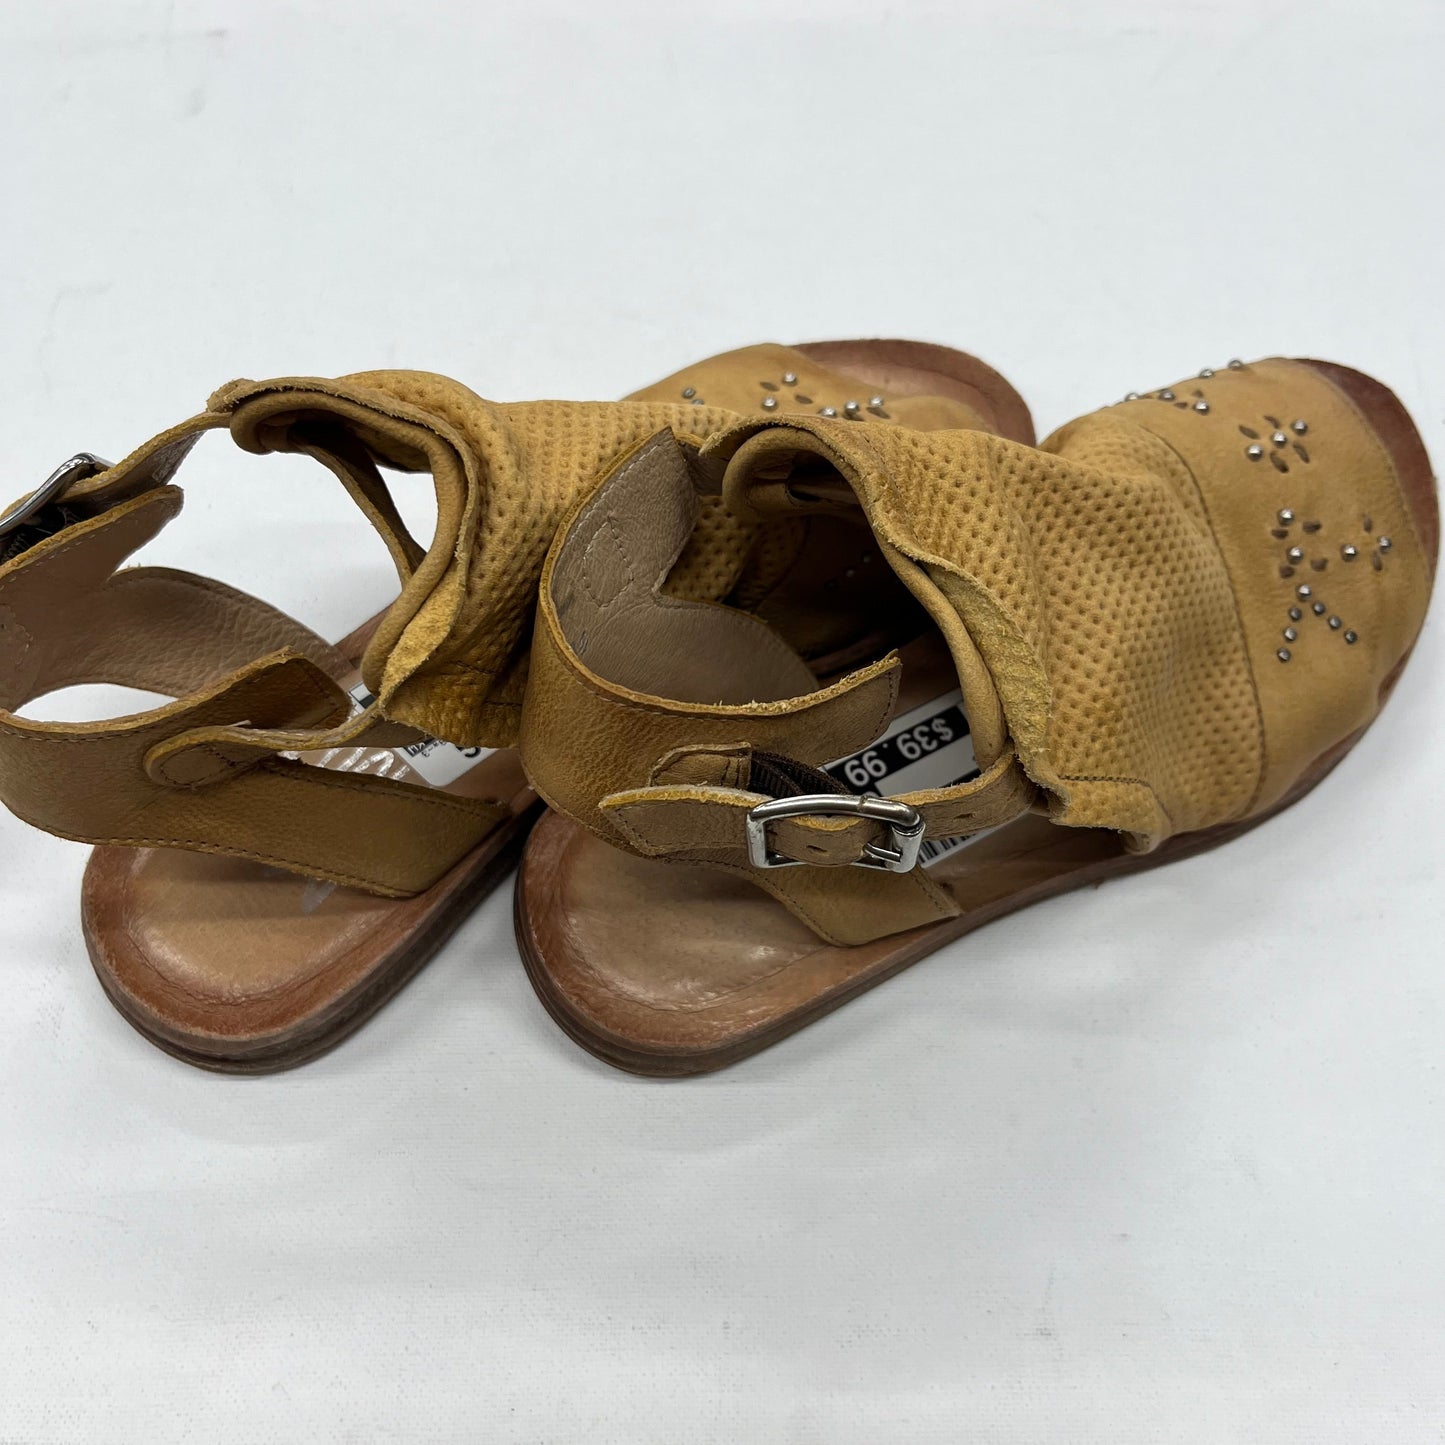 Sandals Flats By Miz Mooz  Size: 5.5